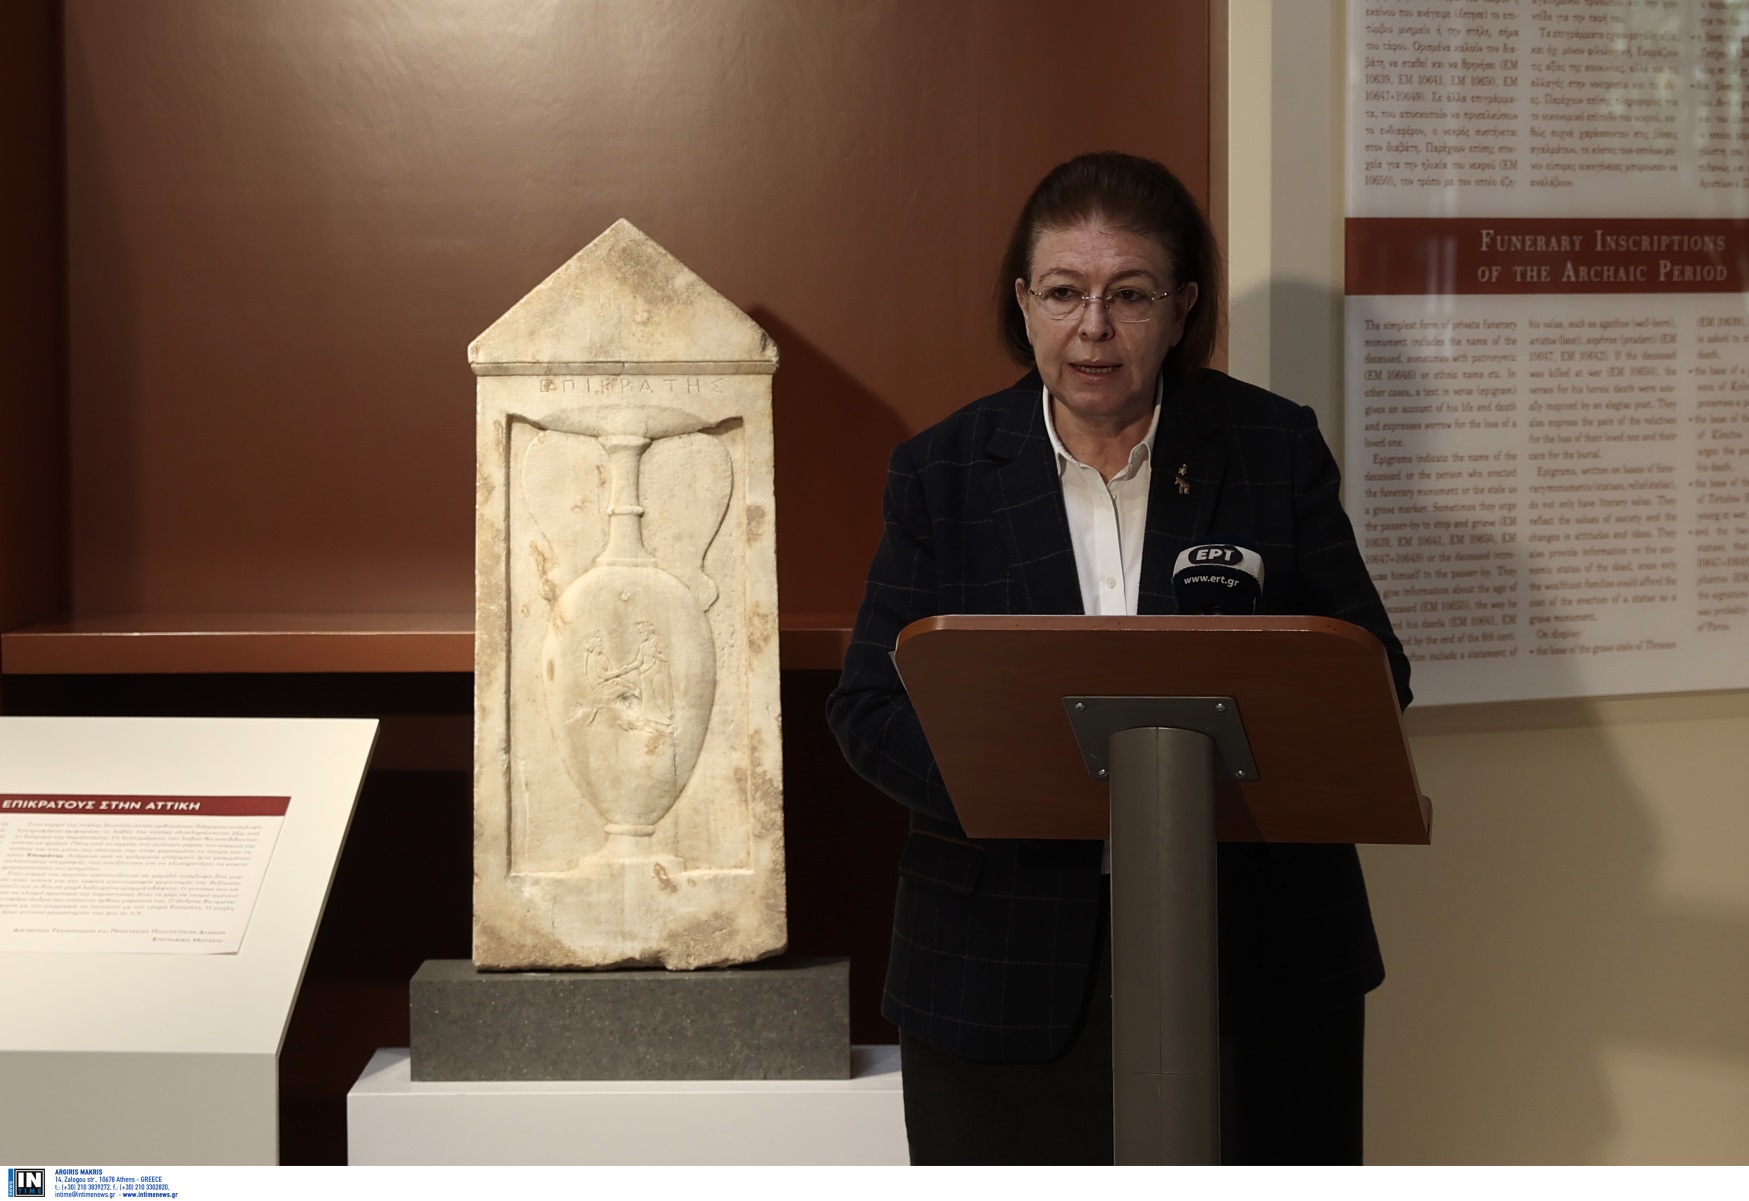 Λίνα Μενδώνη: «Το άλσος και το μουσείο στην Ακαδημία Πλάτωνος, πόλος αναβάθμισης και ανάπτυξης των δυτικών συνοικιών»